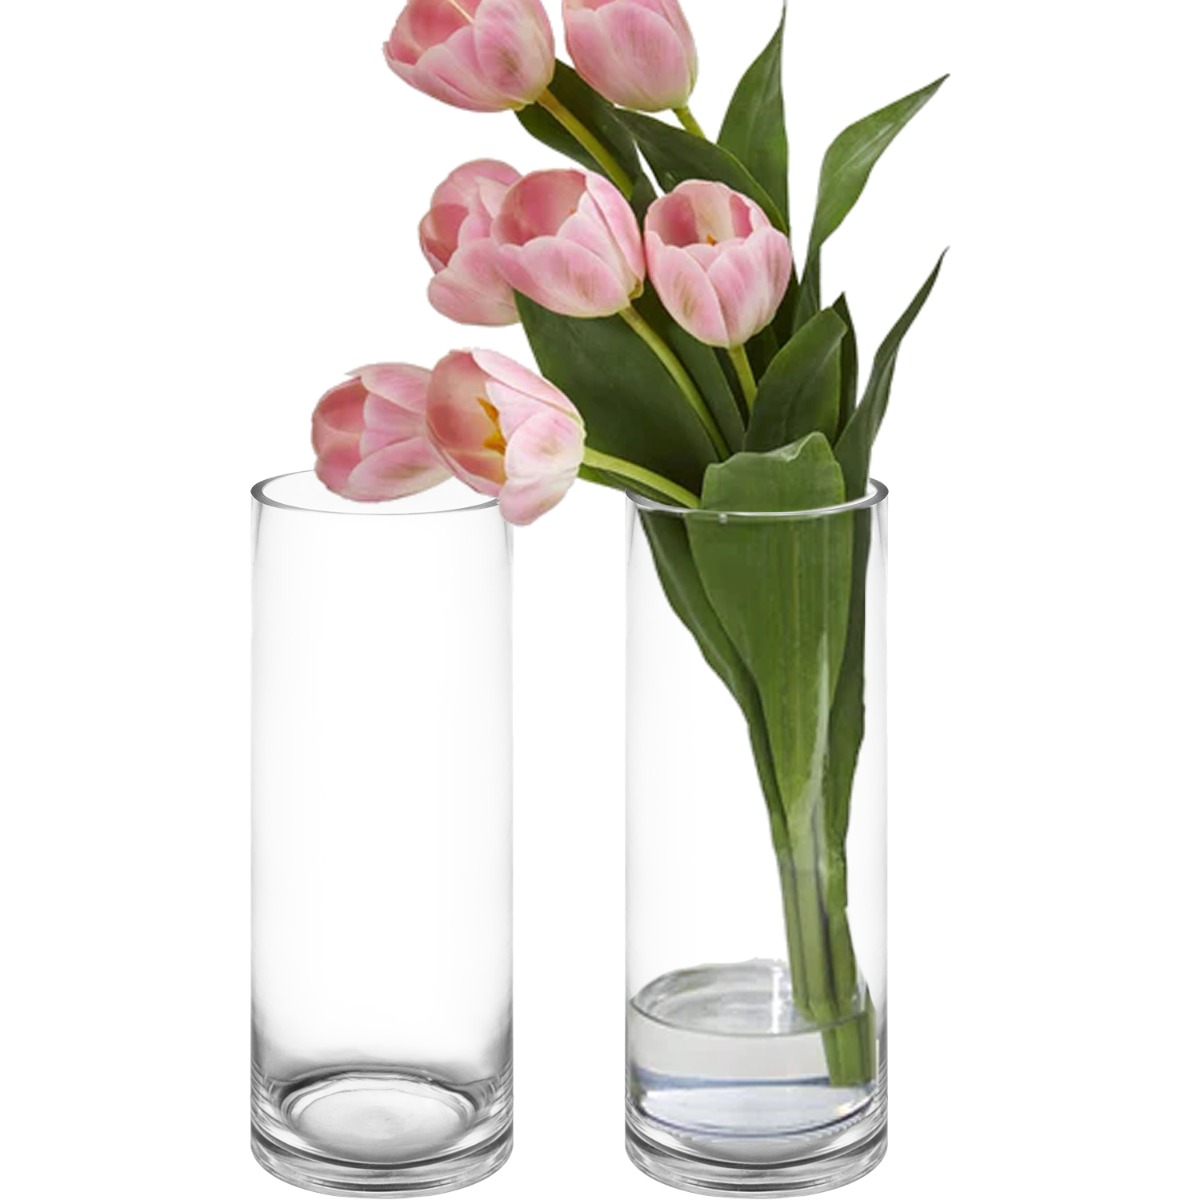 Alice oplukker igennem 14" x 5" Clear Glass Cylinder Flower Vase Candle Holder Centerpieces